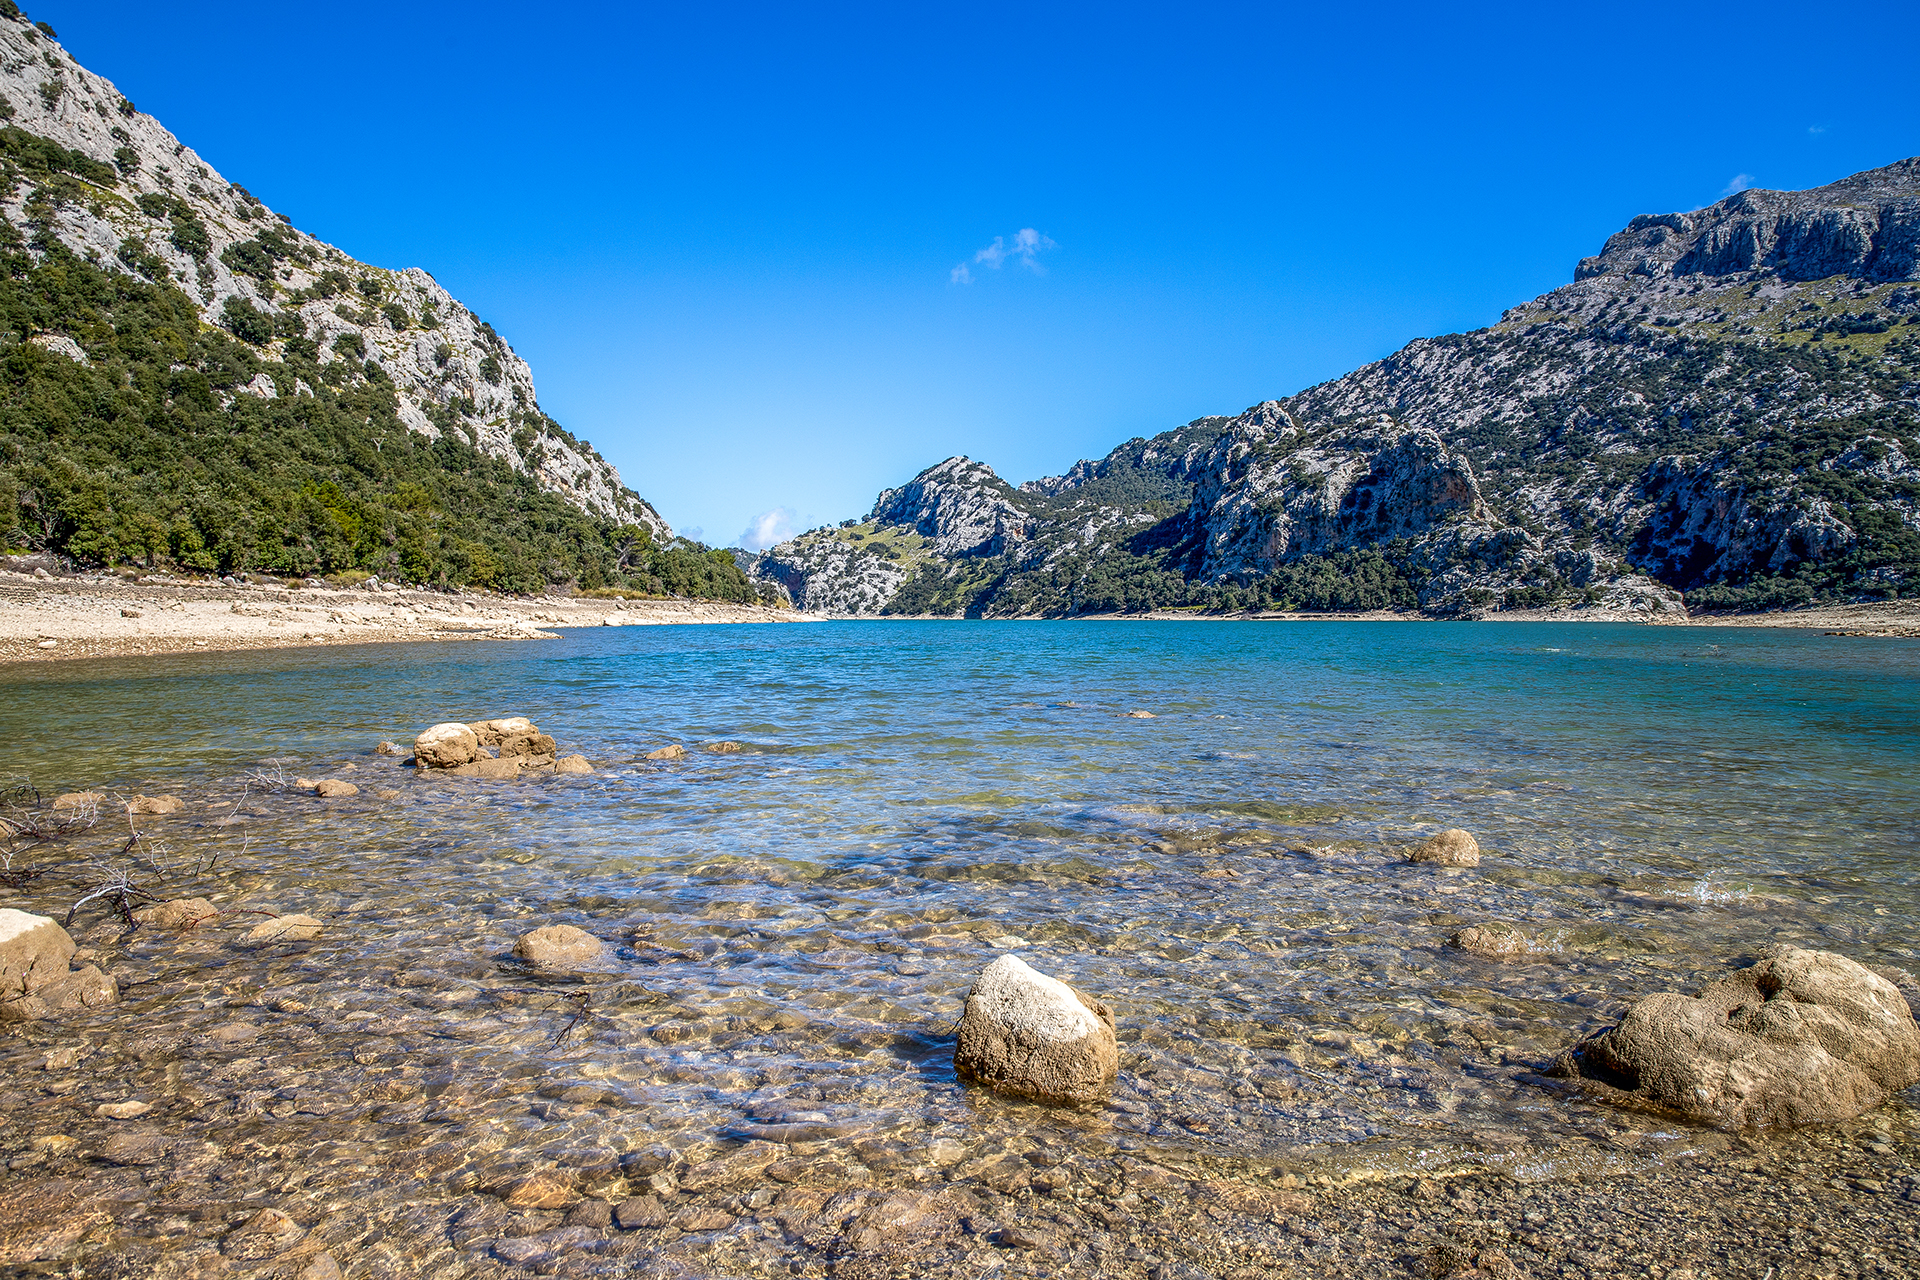 Gorg Blau ist ein Stausee auf der spanischen Mittelmeerinsel Mallorca im Tramuntana Gebirge. Gorg Blau is a reservoir on the Spanish Mediterranean island of Mallorca in the Tramuntana mountains.